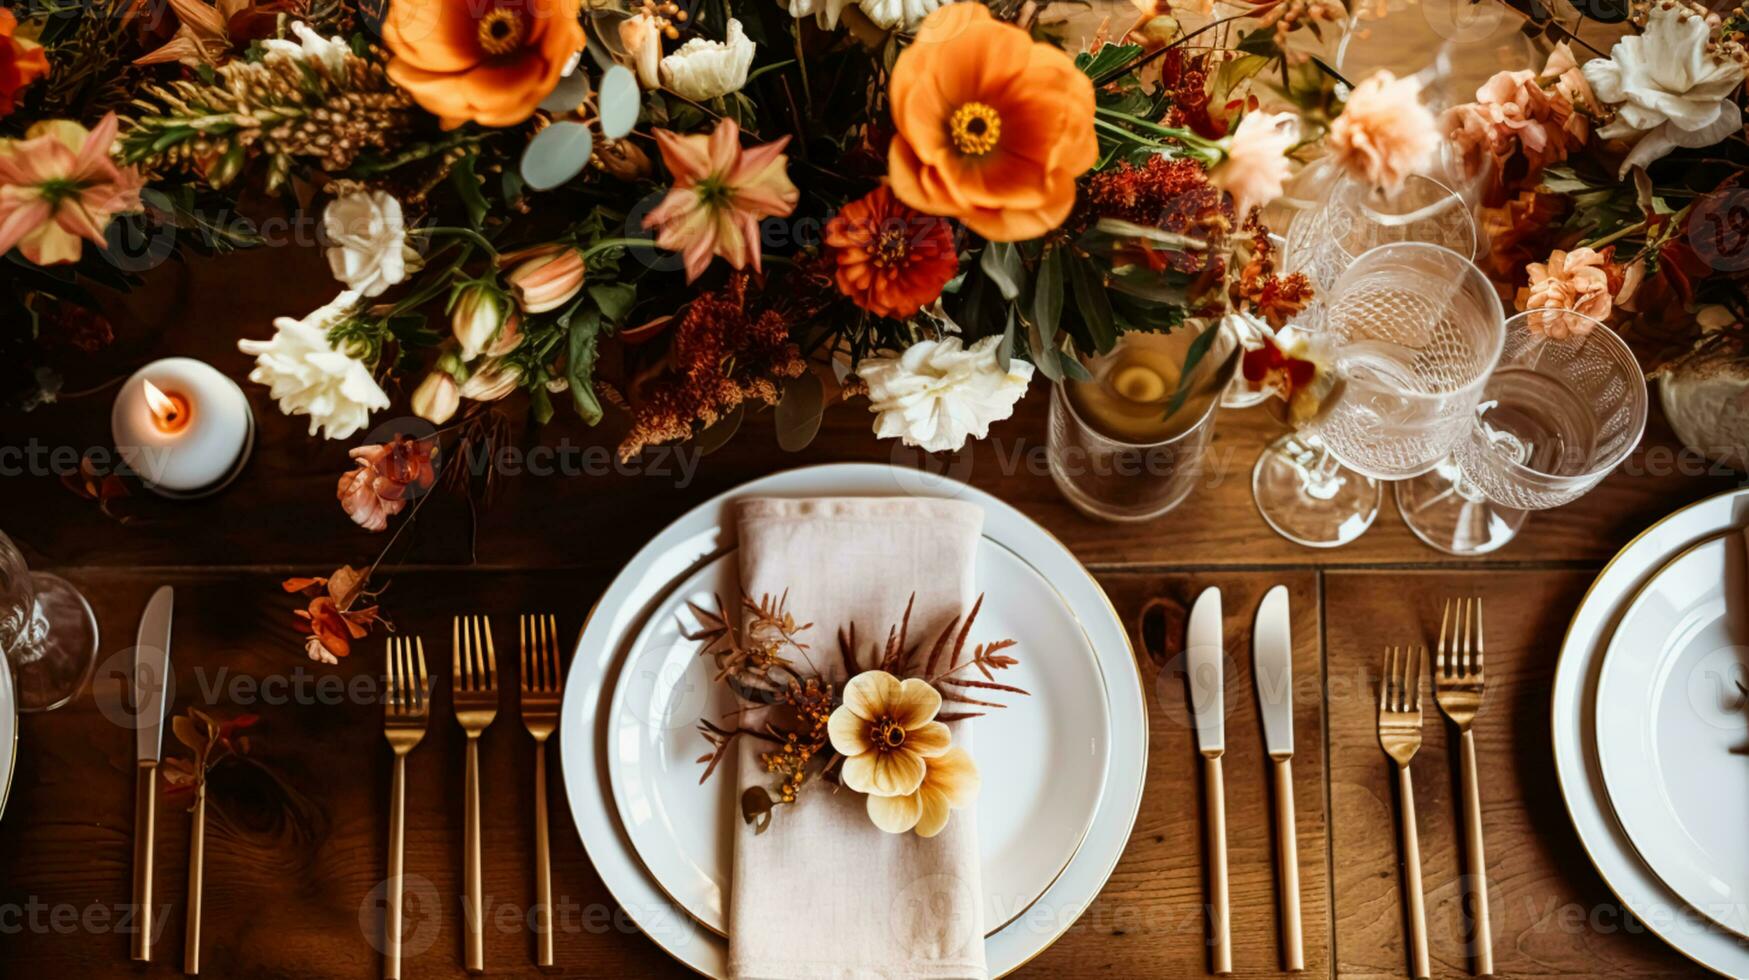 ai gegenereerd herfst vakantie tafellandschap, formeel avondeten tafel instelling, tafel scape met elegant herfst- bloemen decor voor bruiloft partij en evenement decoratie foto